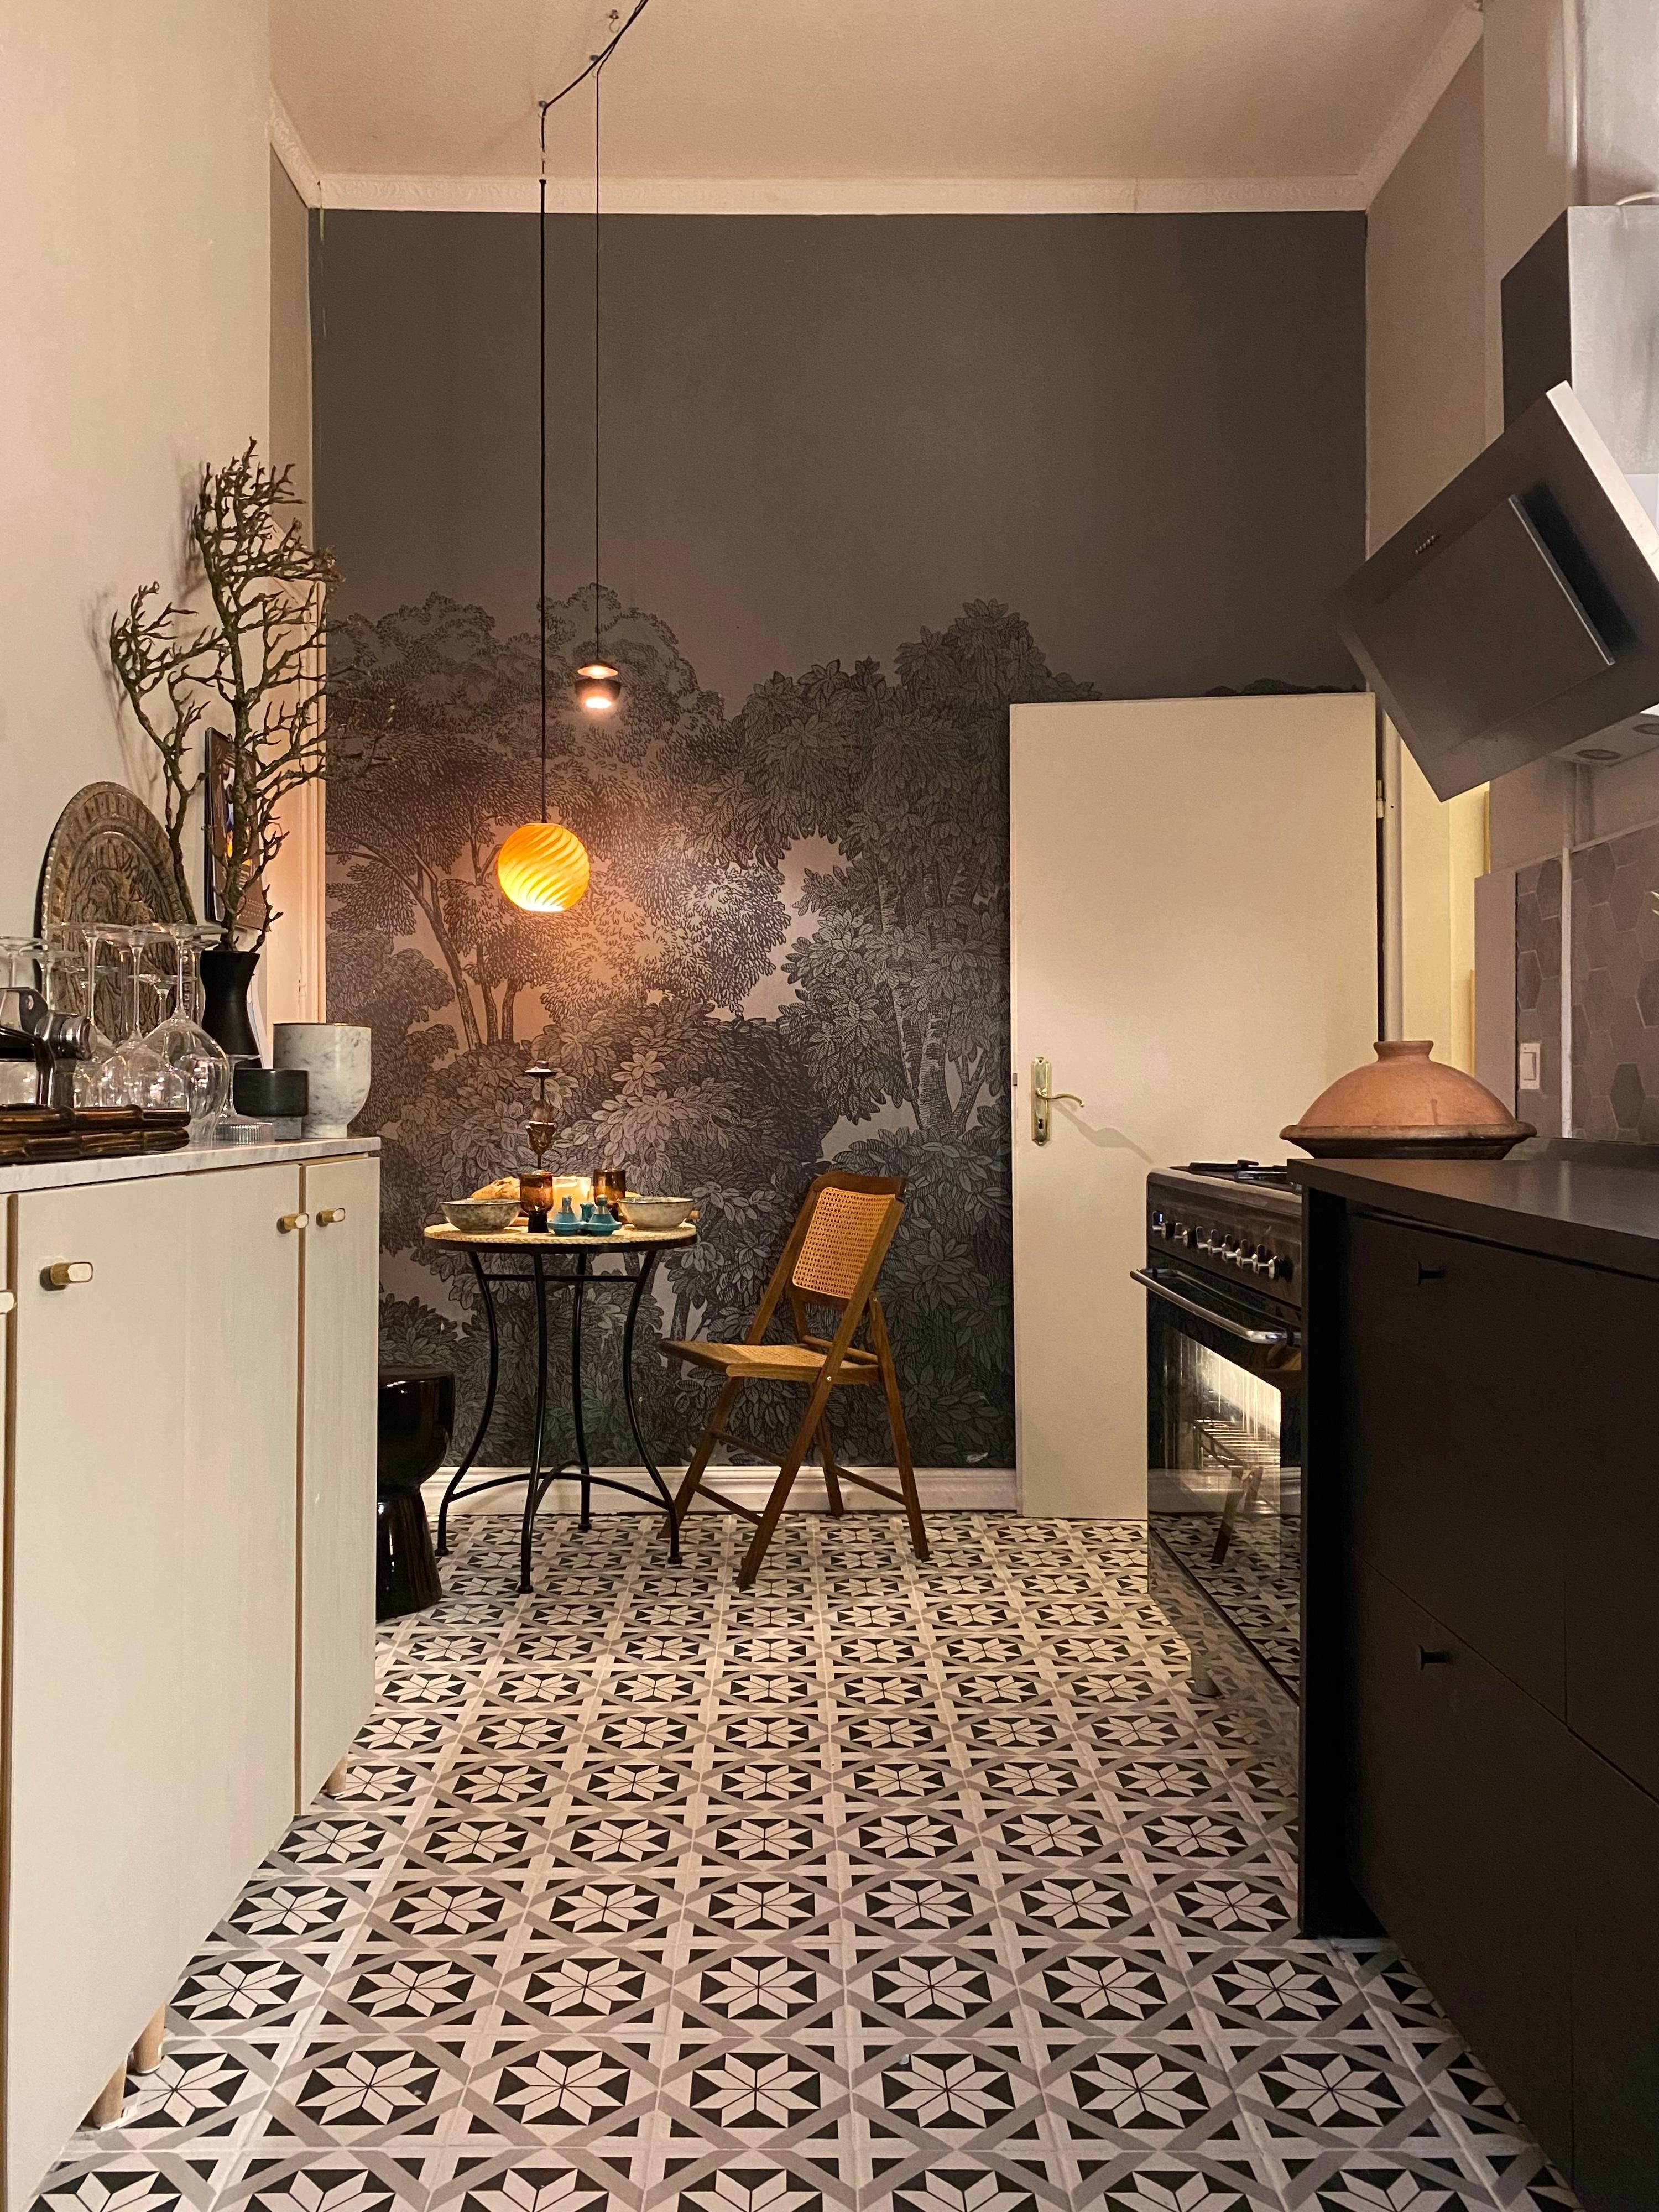 Fliesenlegen: Done ☑️ #küche #diy #renovierung #tapete #altbau